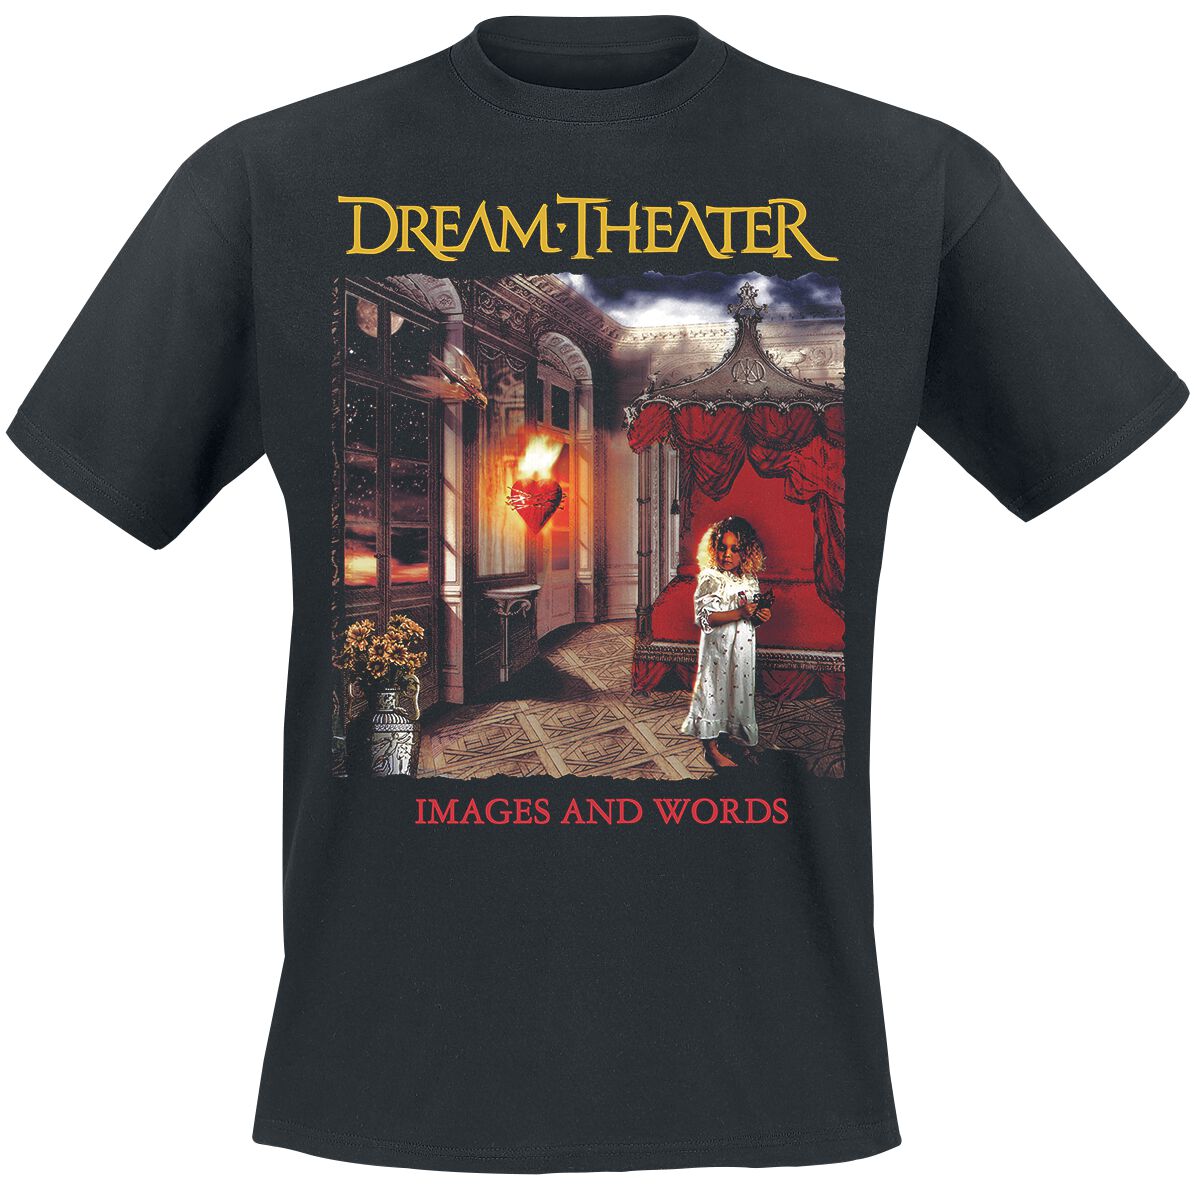 Dream Theater T-Shirt - Images & words - S bis XXL - für Männer - Größe M - schwarz  - Lizenziertes Merchandise!